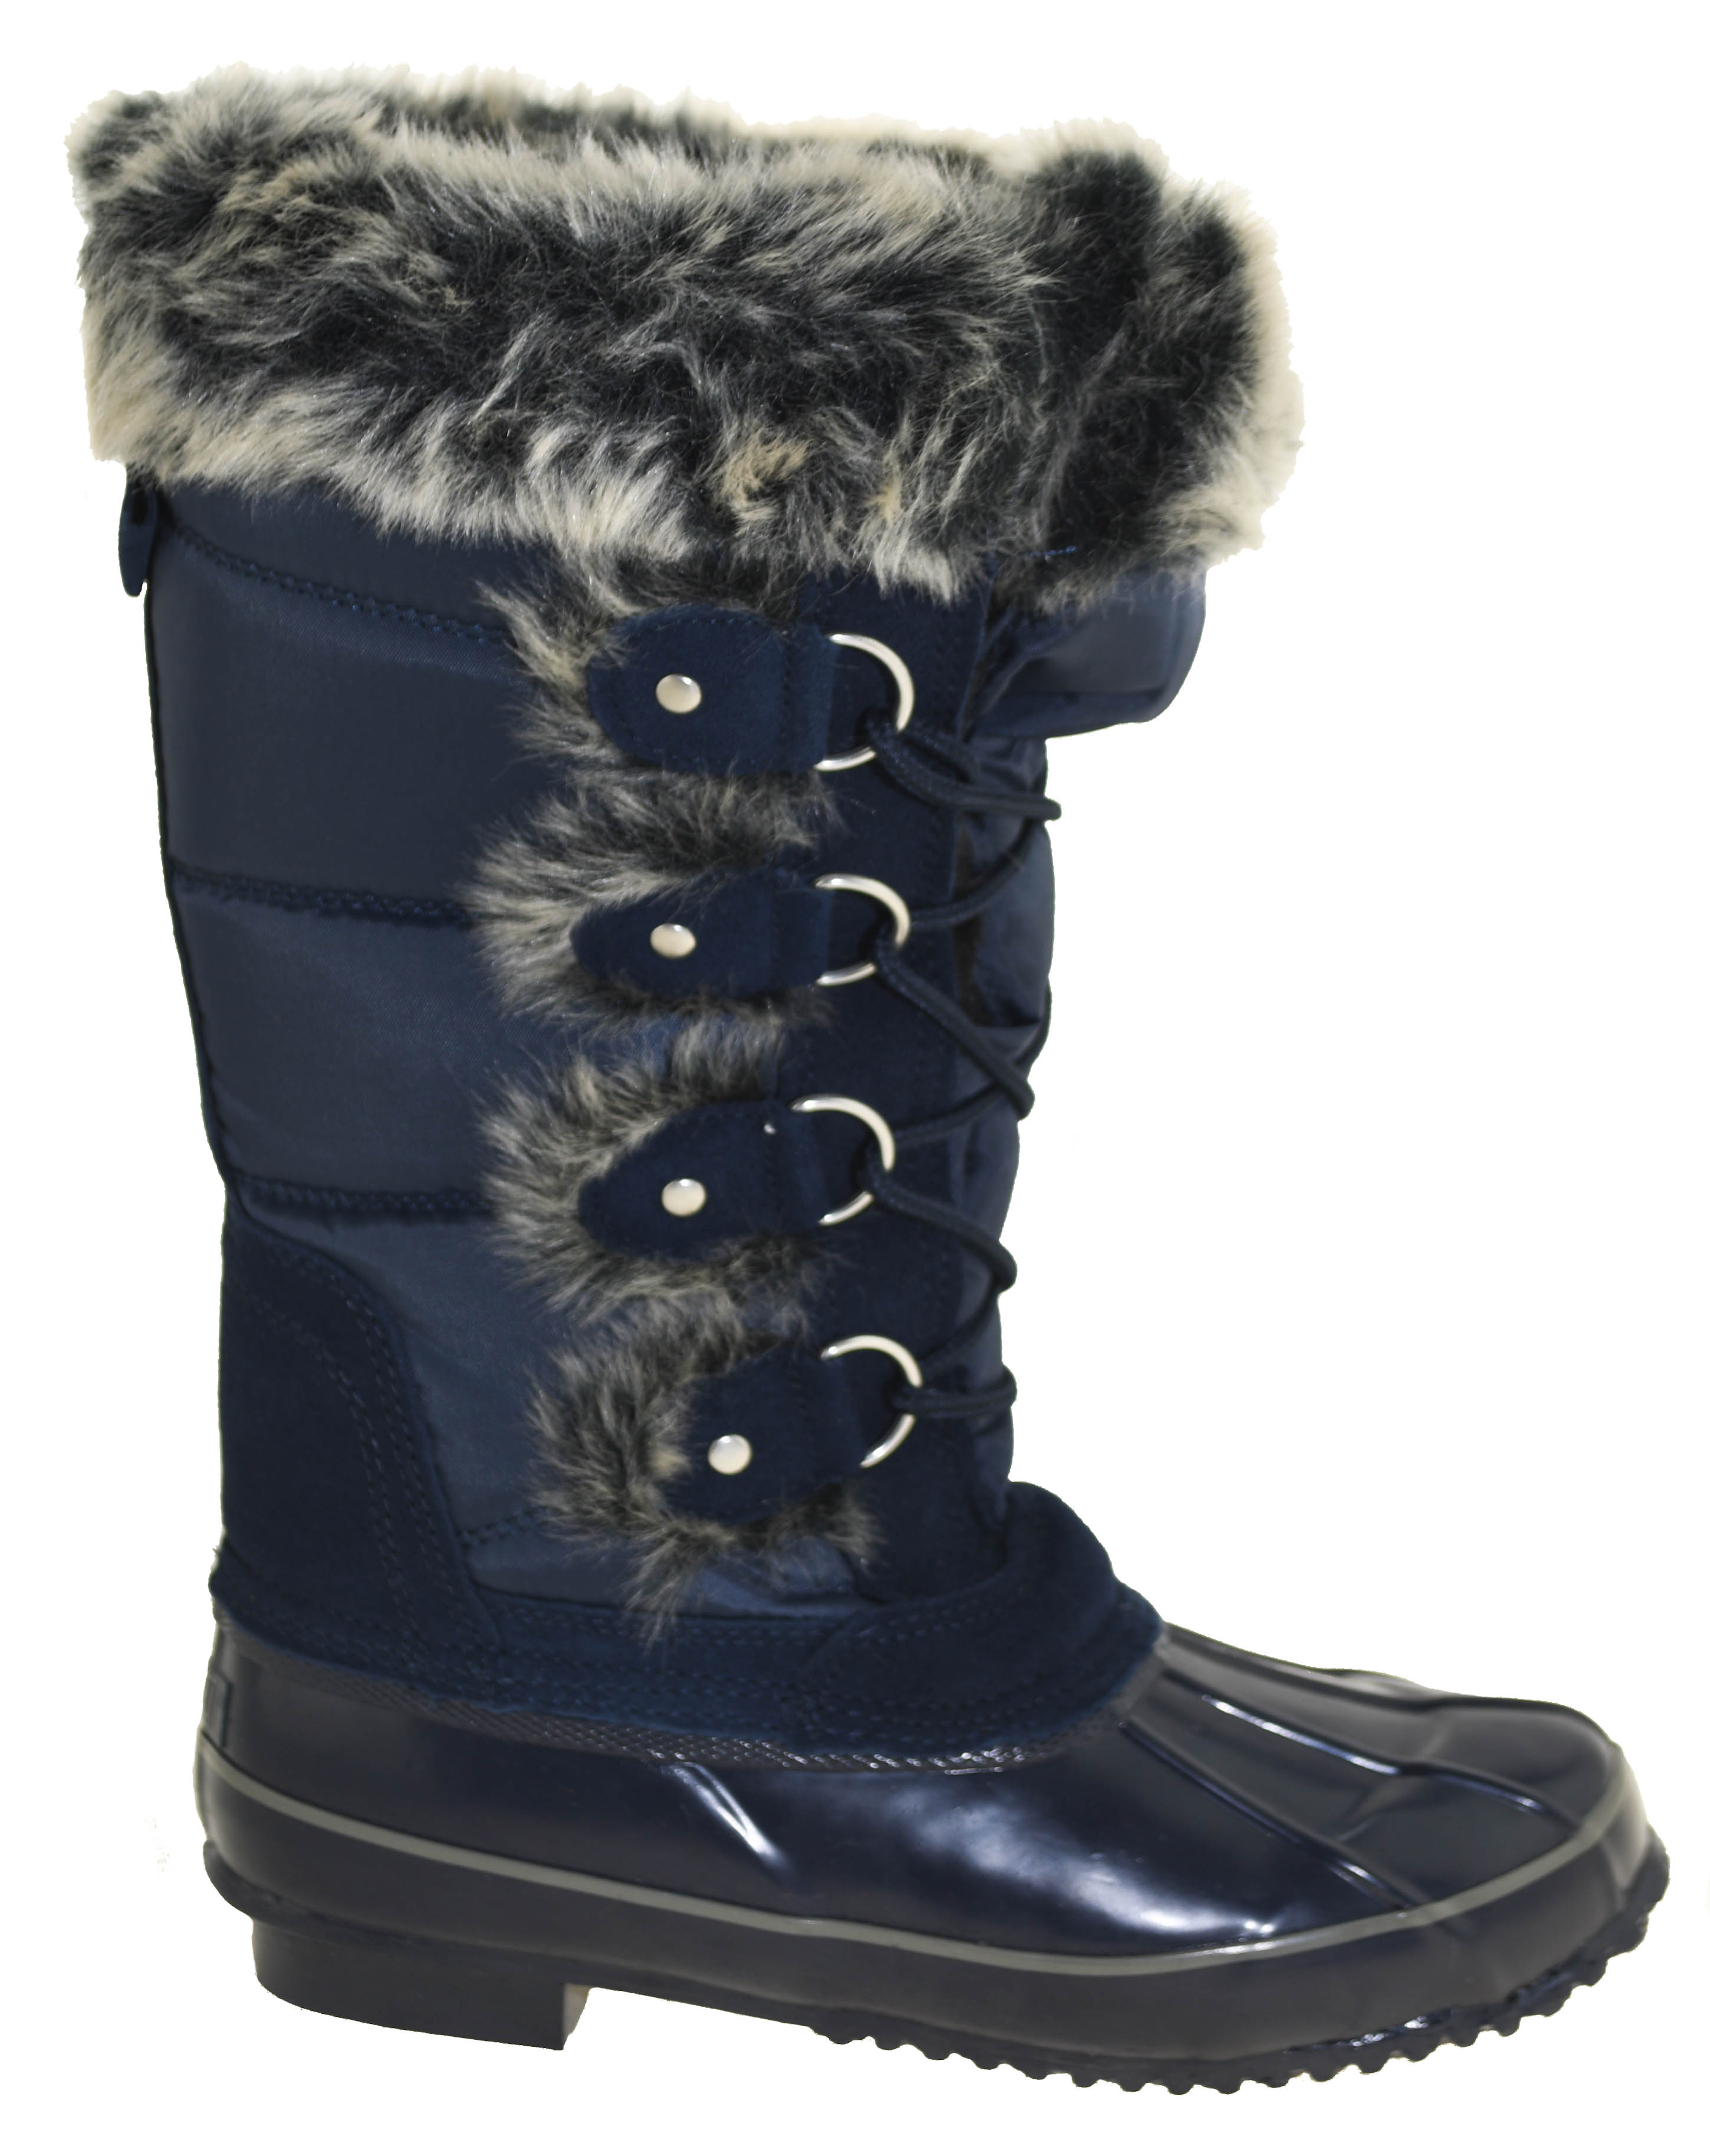 womens navy blue winter boots